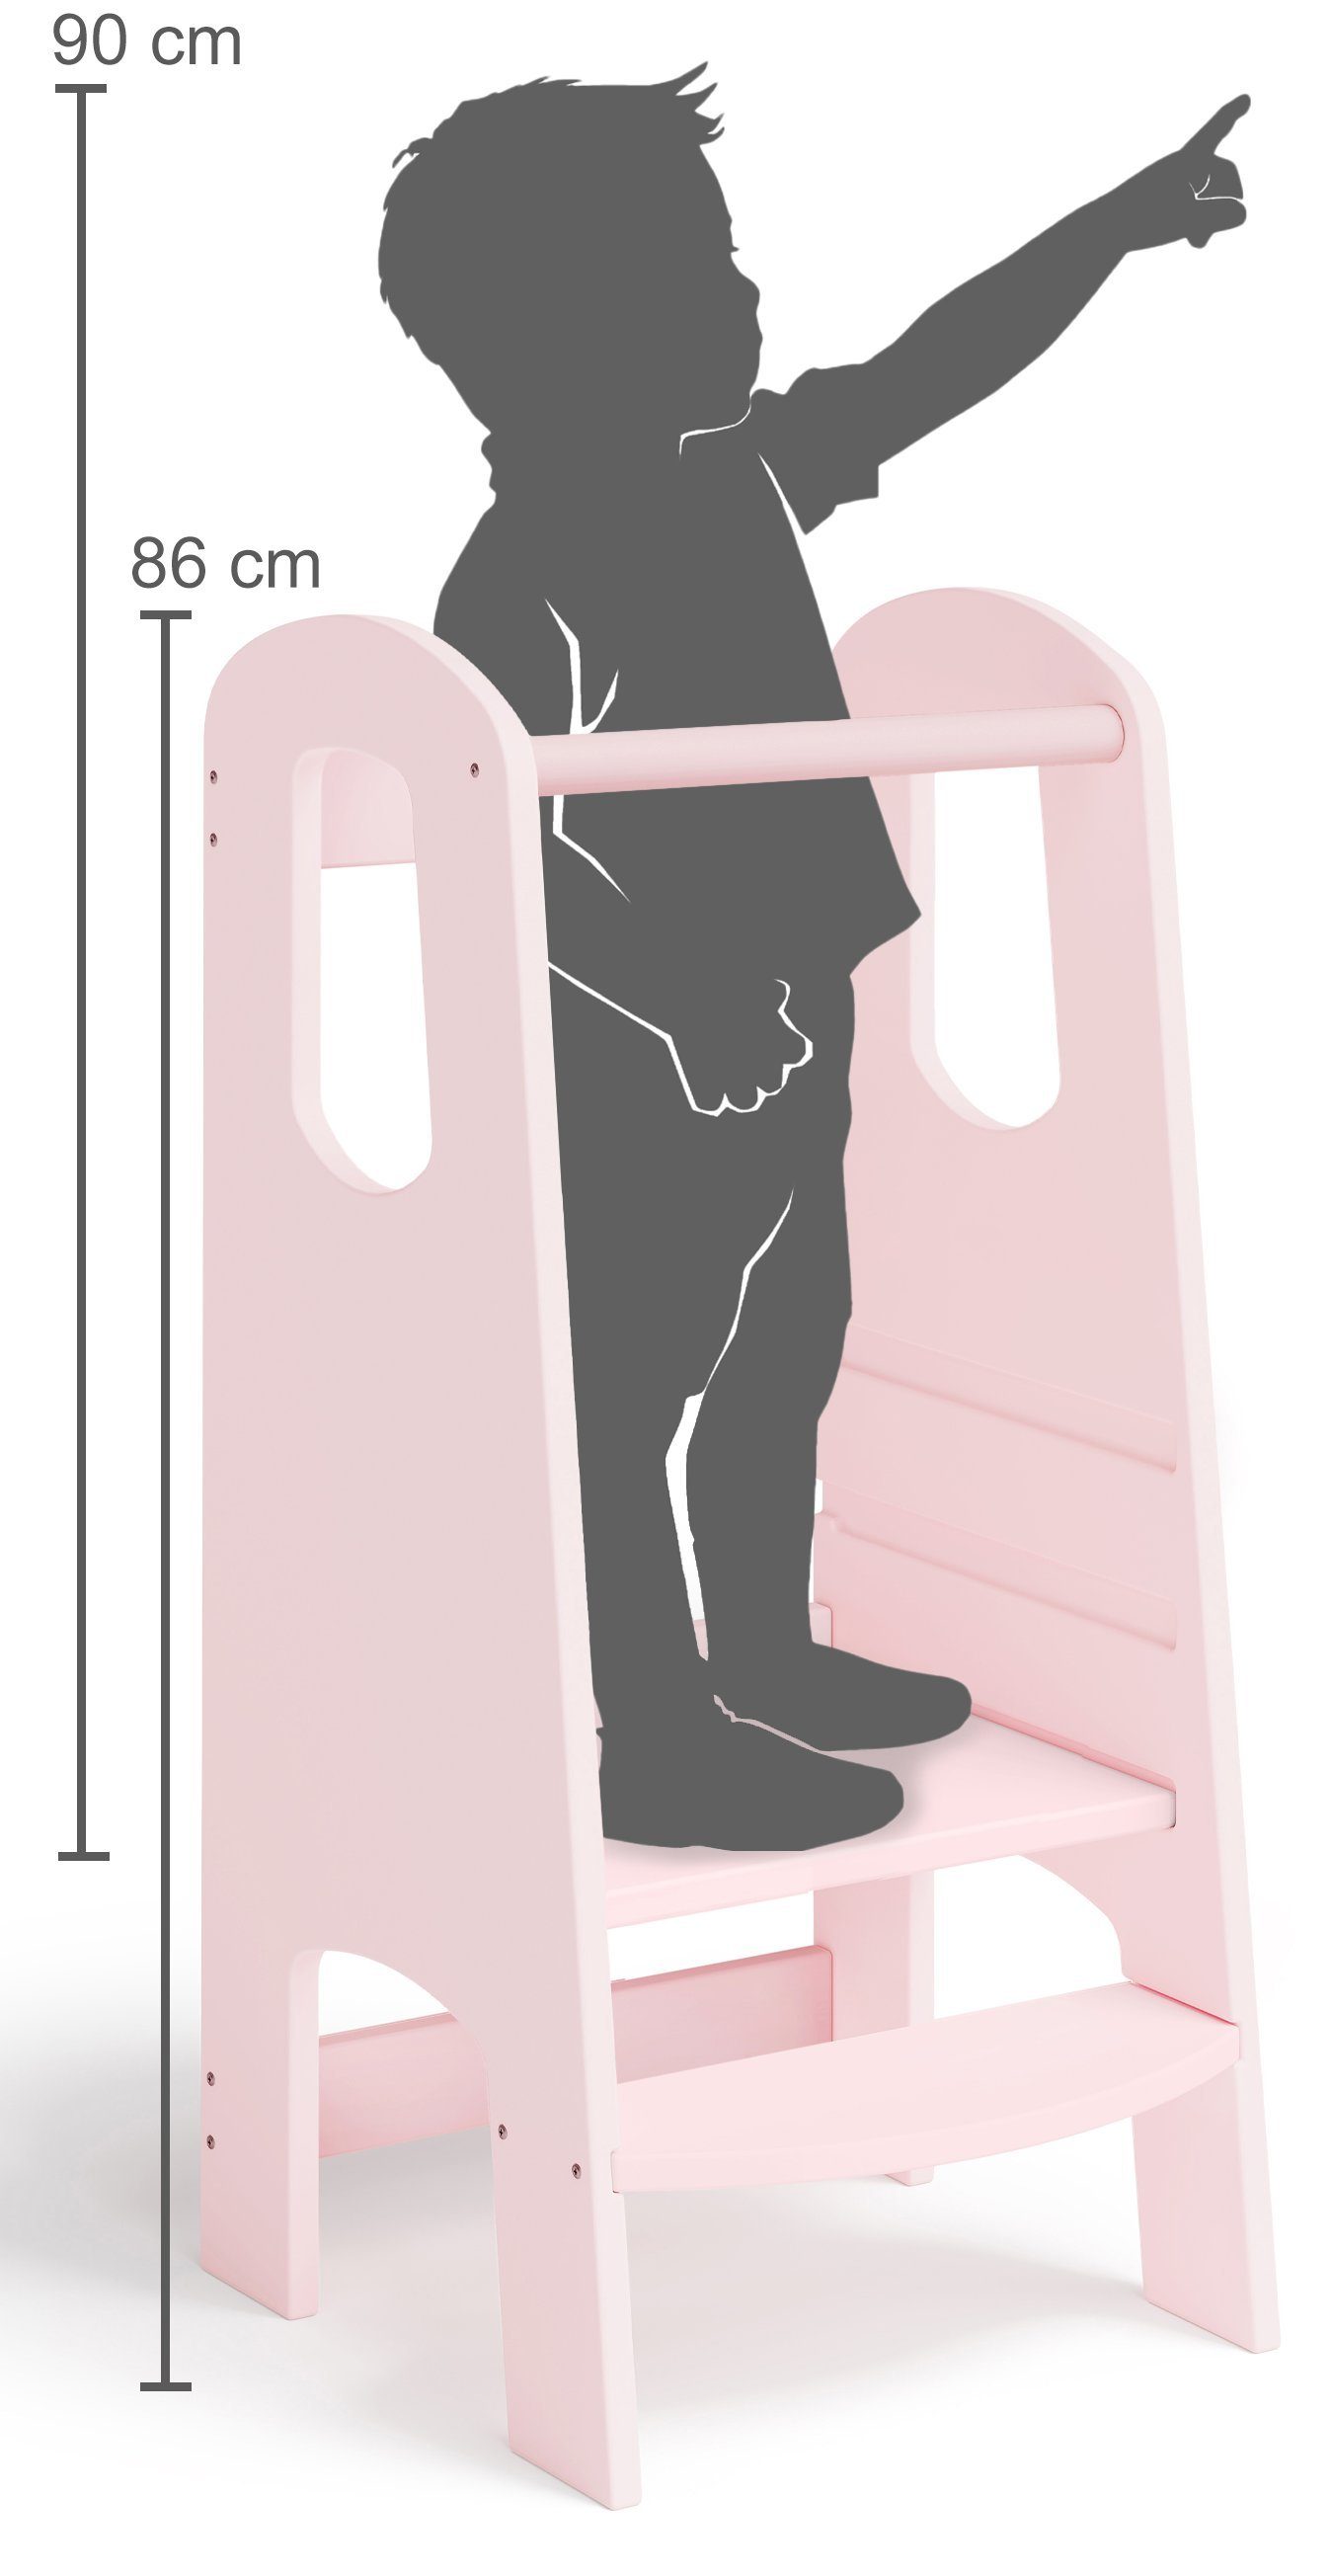 Bellabino Stehhilfe Lernturm Luni, 3-fach aus Birke Sperrholz, höhenverstellbar, rosa